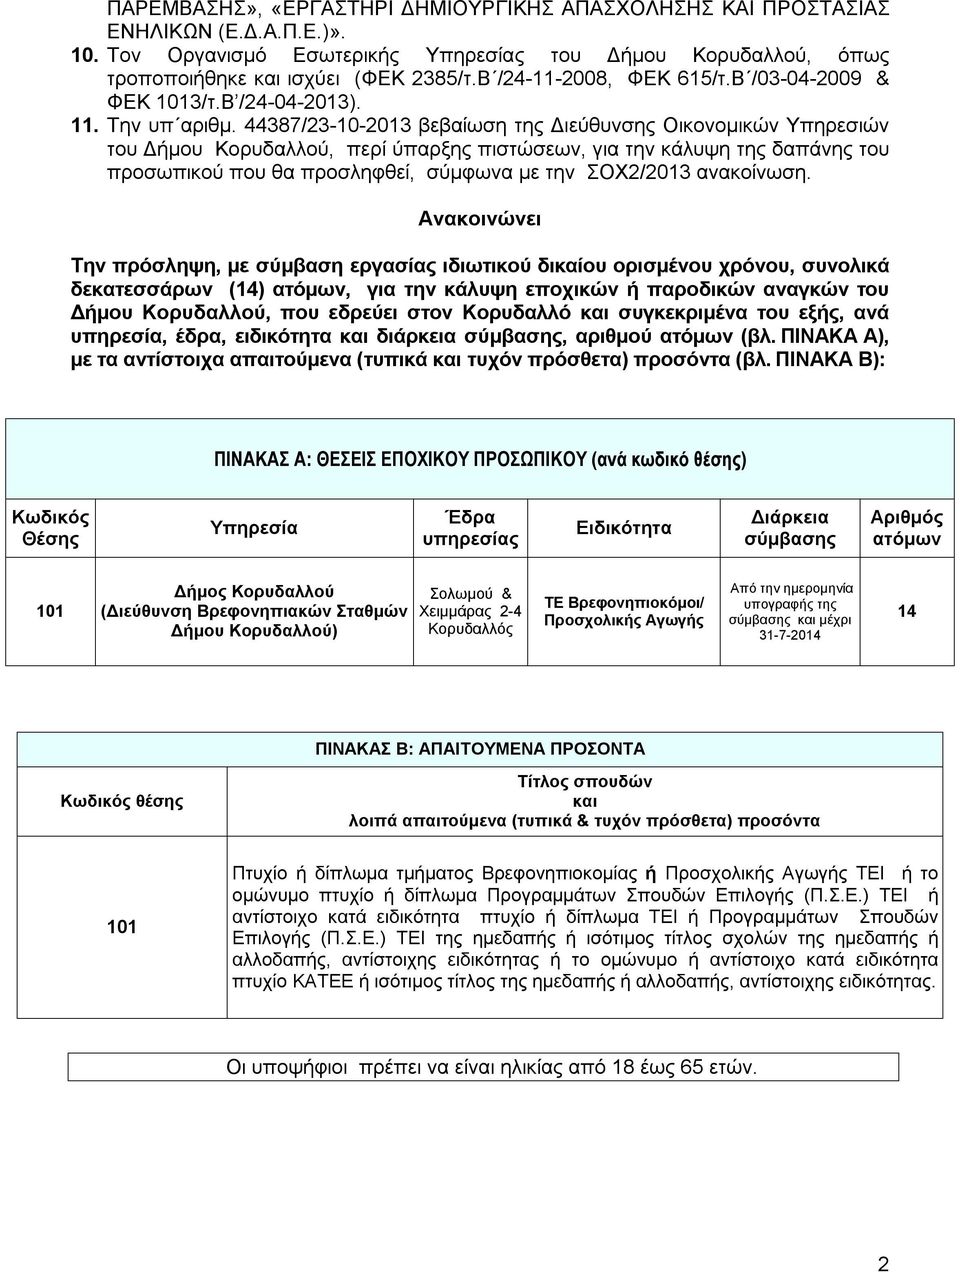 44387/23-10-2013 βεβαίωση της Διεύθυνσης Οικονομικών Υπηρεσιών του Δήμου Κορυδαλλού, περί ύπαρξης πιστώσεων, για την κάλυψη της δαπάνης του προσωπικού που θα προσληφθεί, σύμφωνα με την ΣΟΧ2/2013